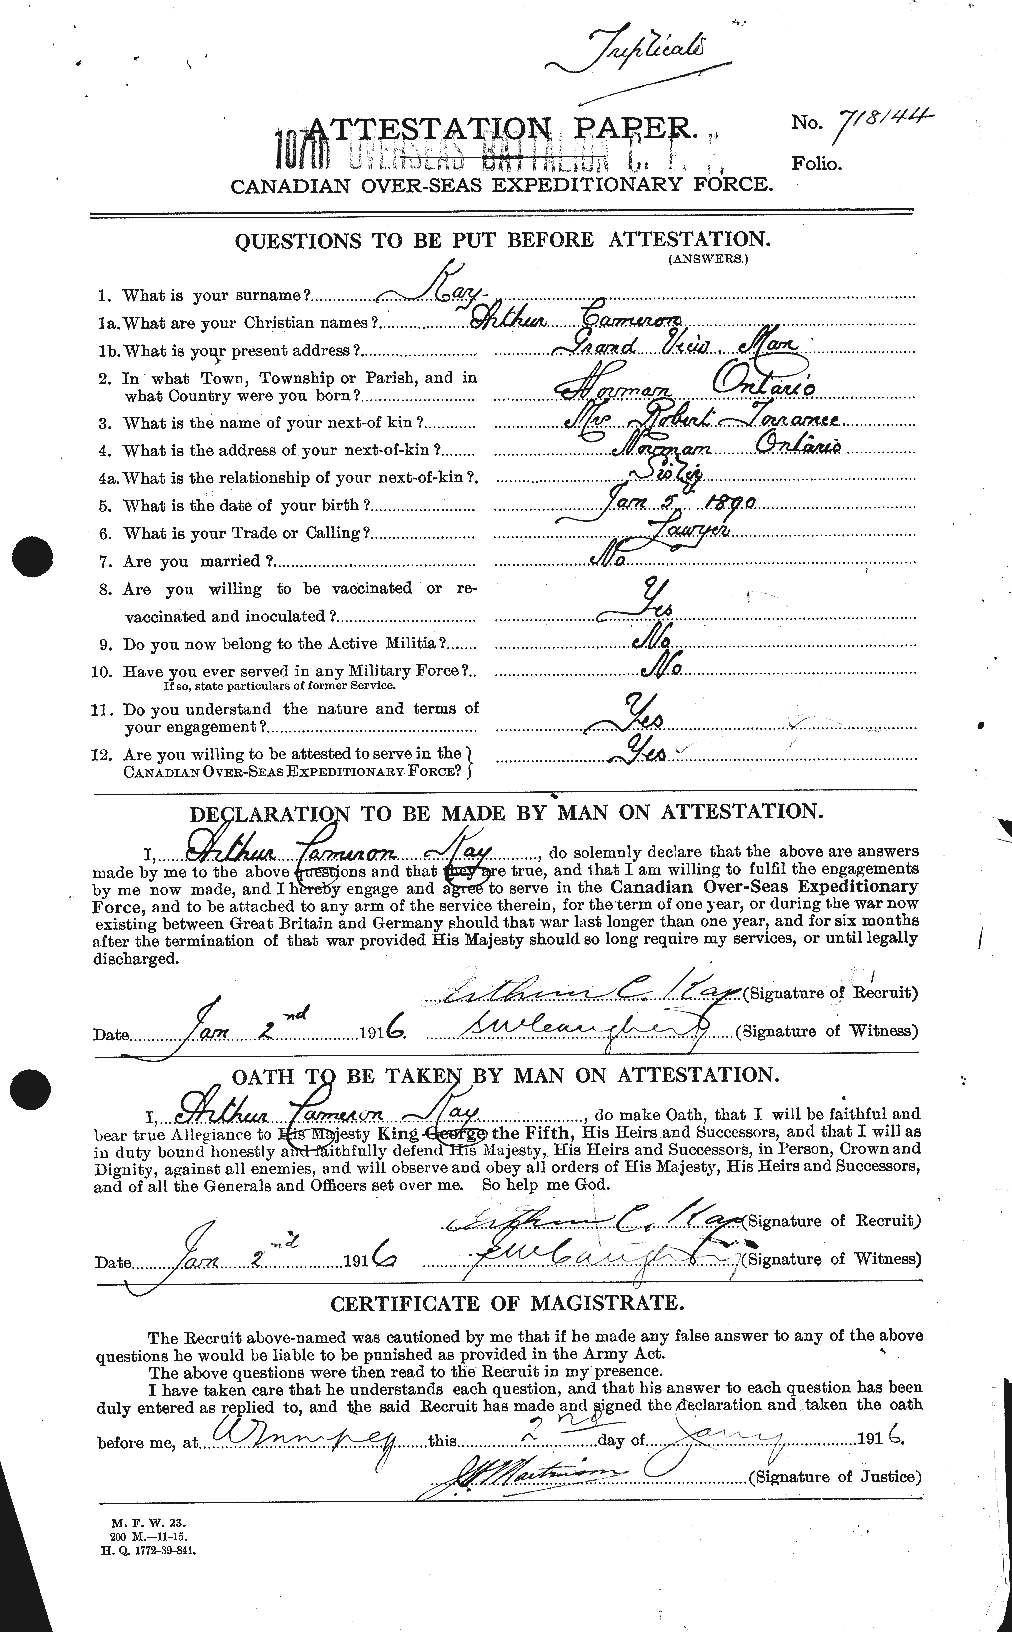 Dossiers du Personnel de la Première Guerre mondiale - CEC 425890a